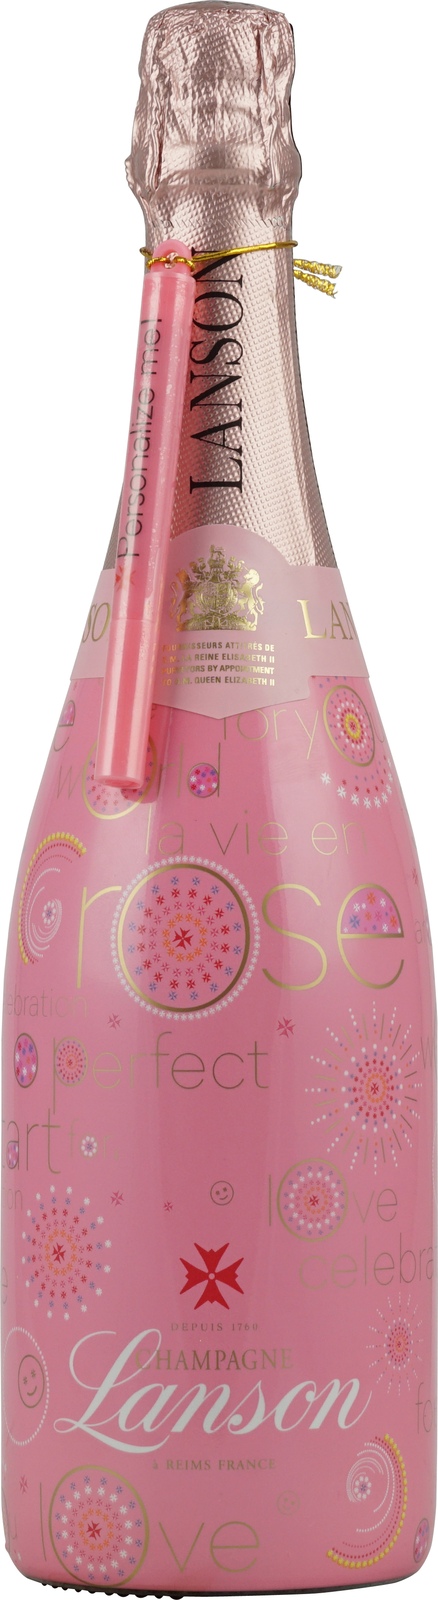 Lanson Rosé Champagner 12,5 % Pink 0,75 Liter V Edition